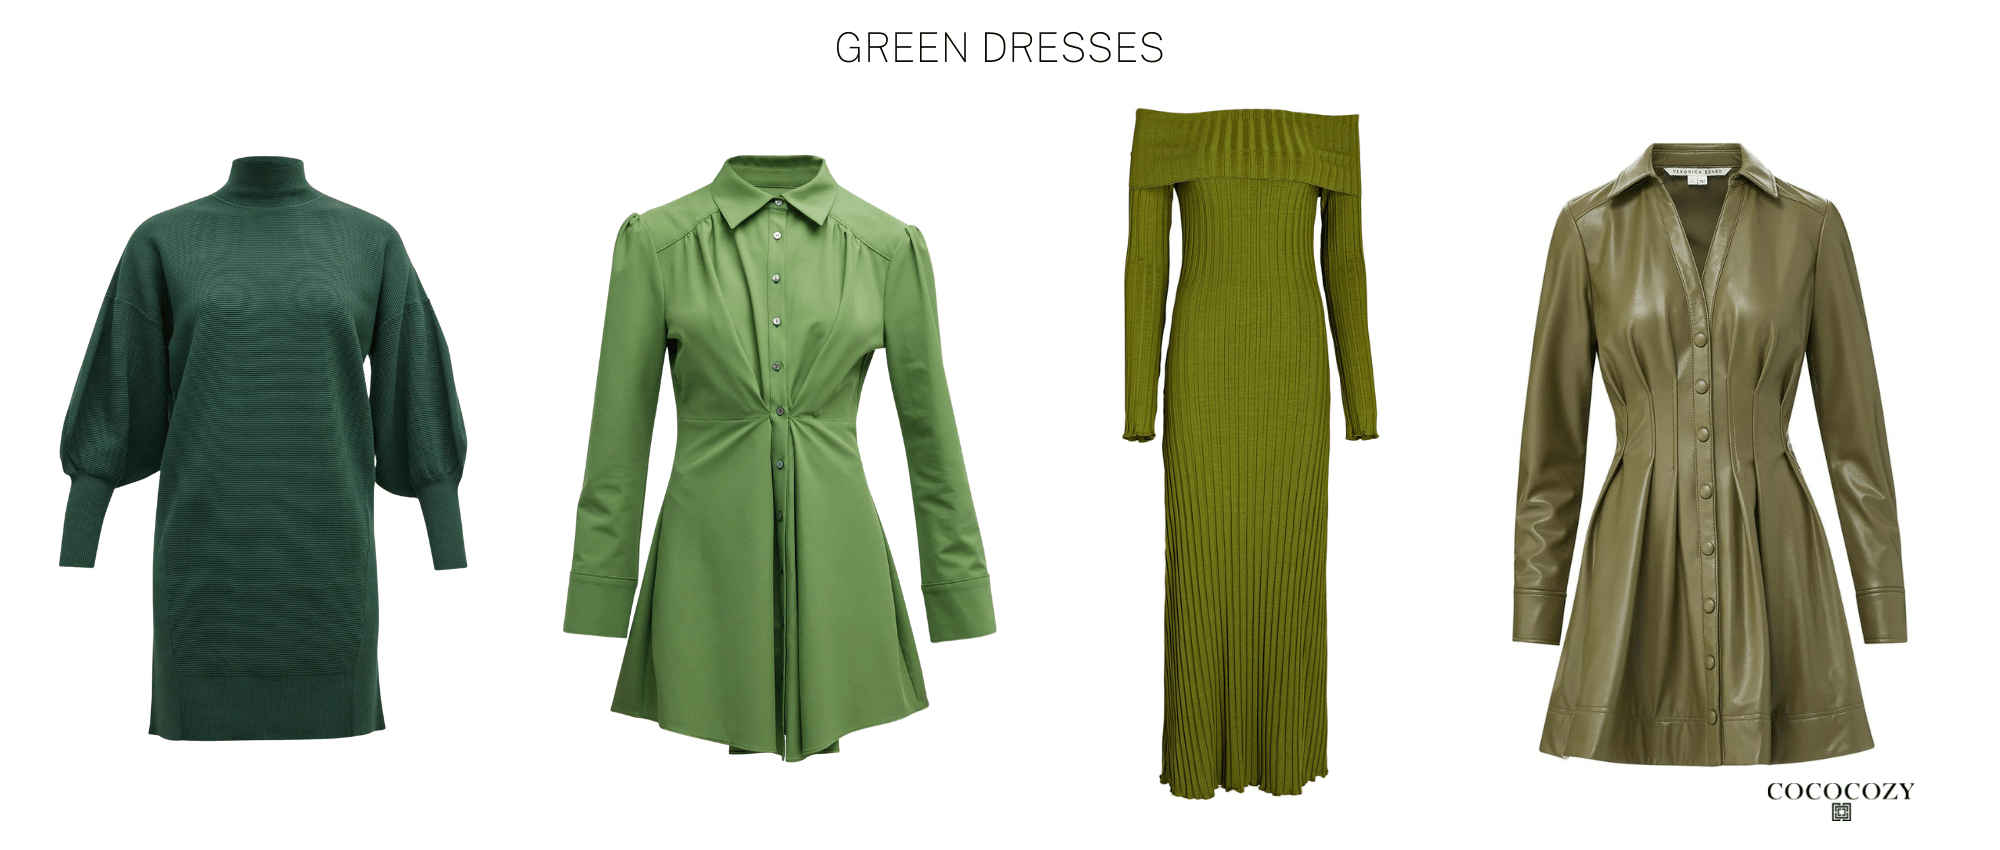 Alt tag para vestidos verdes-cococozy